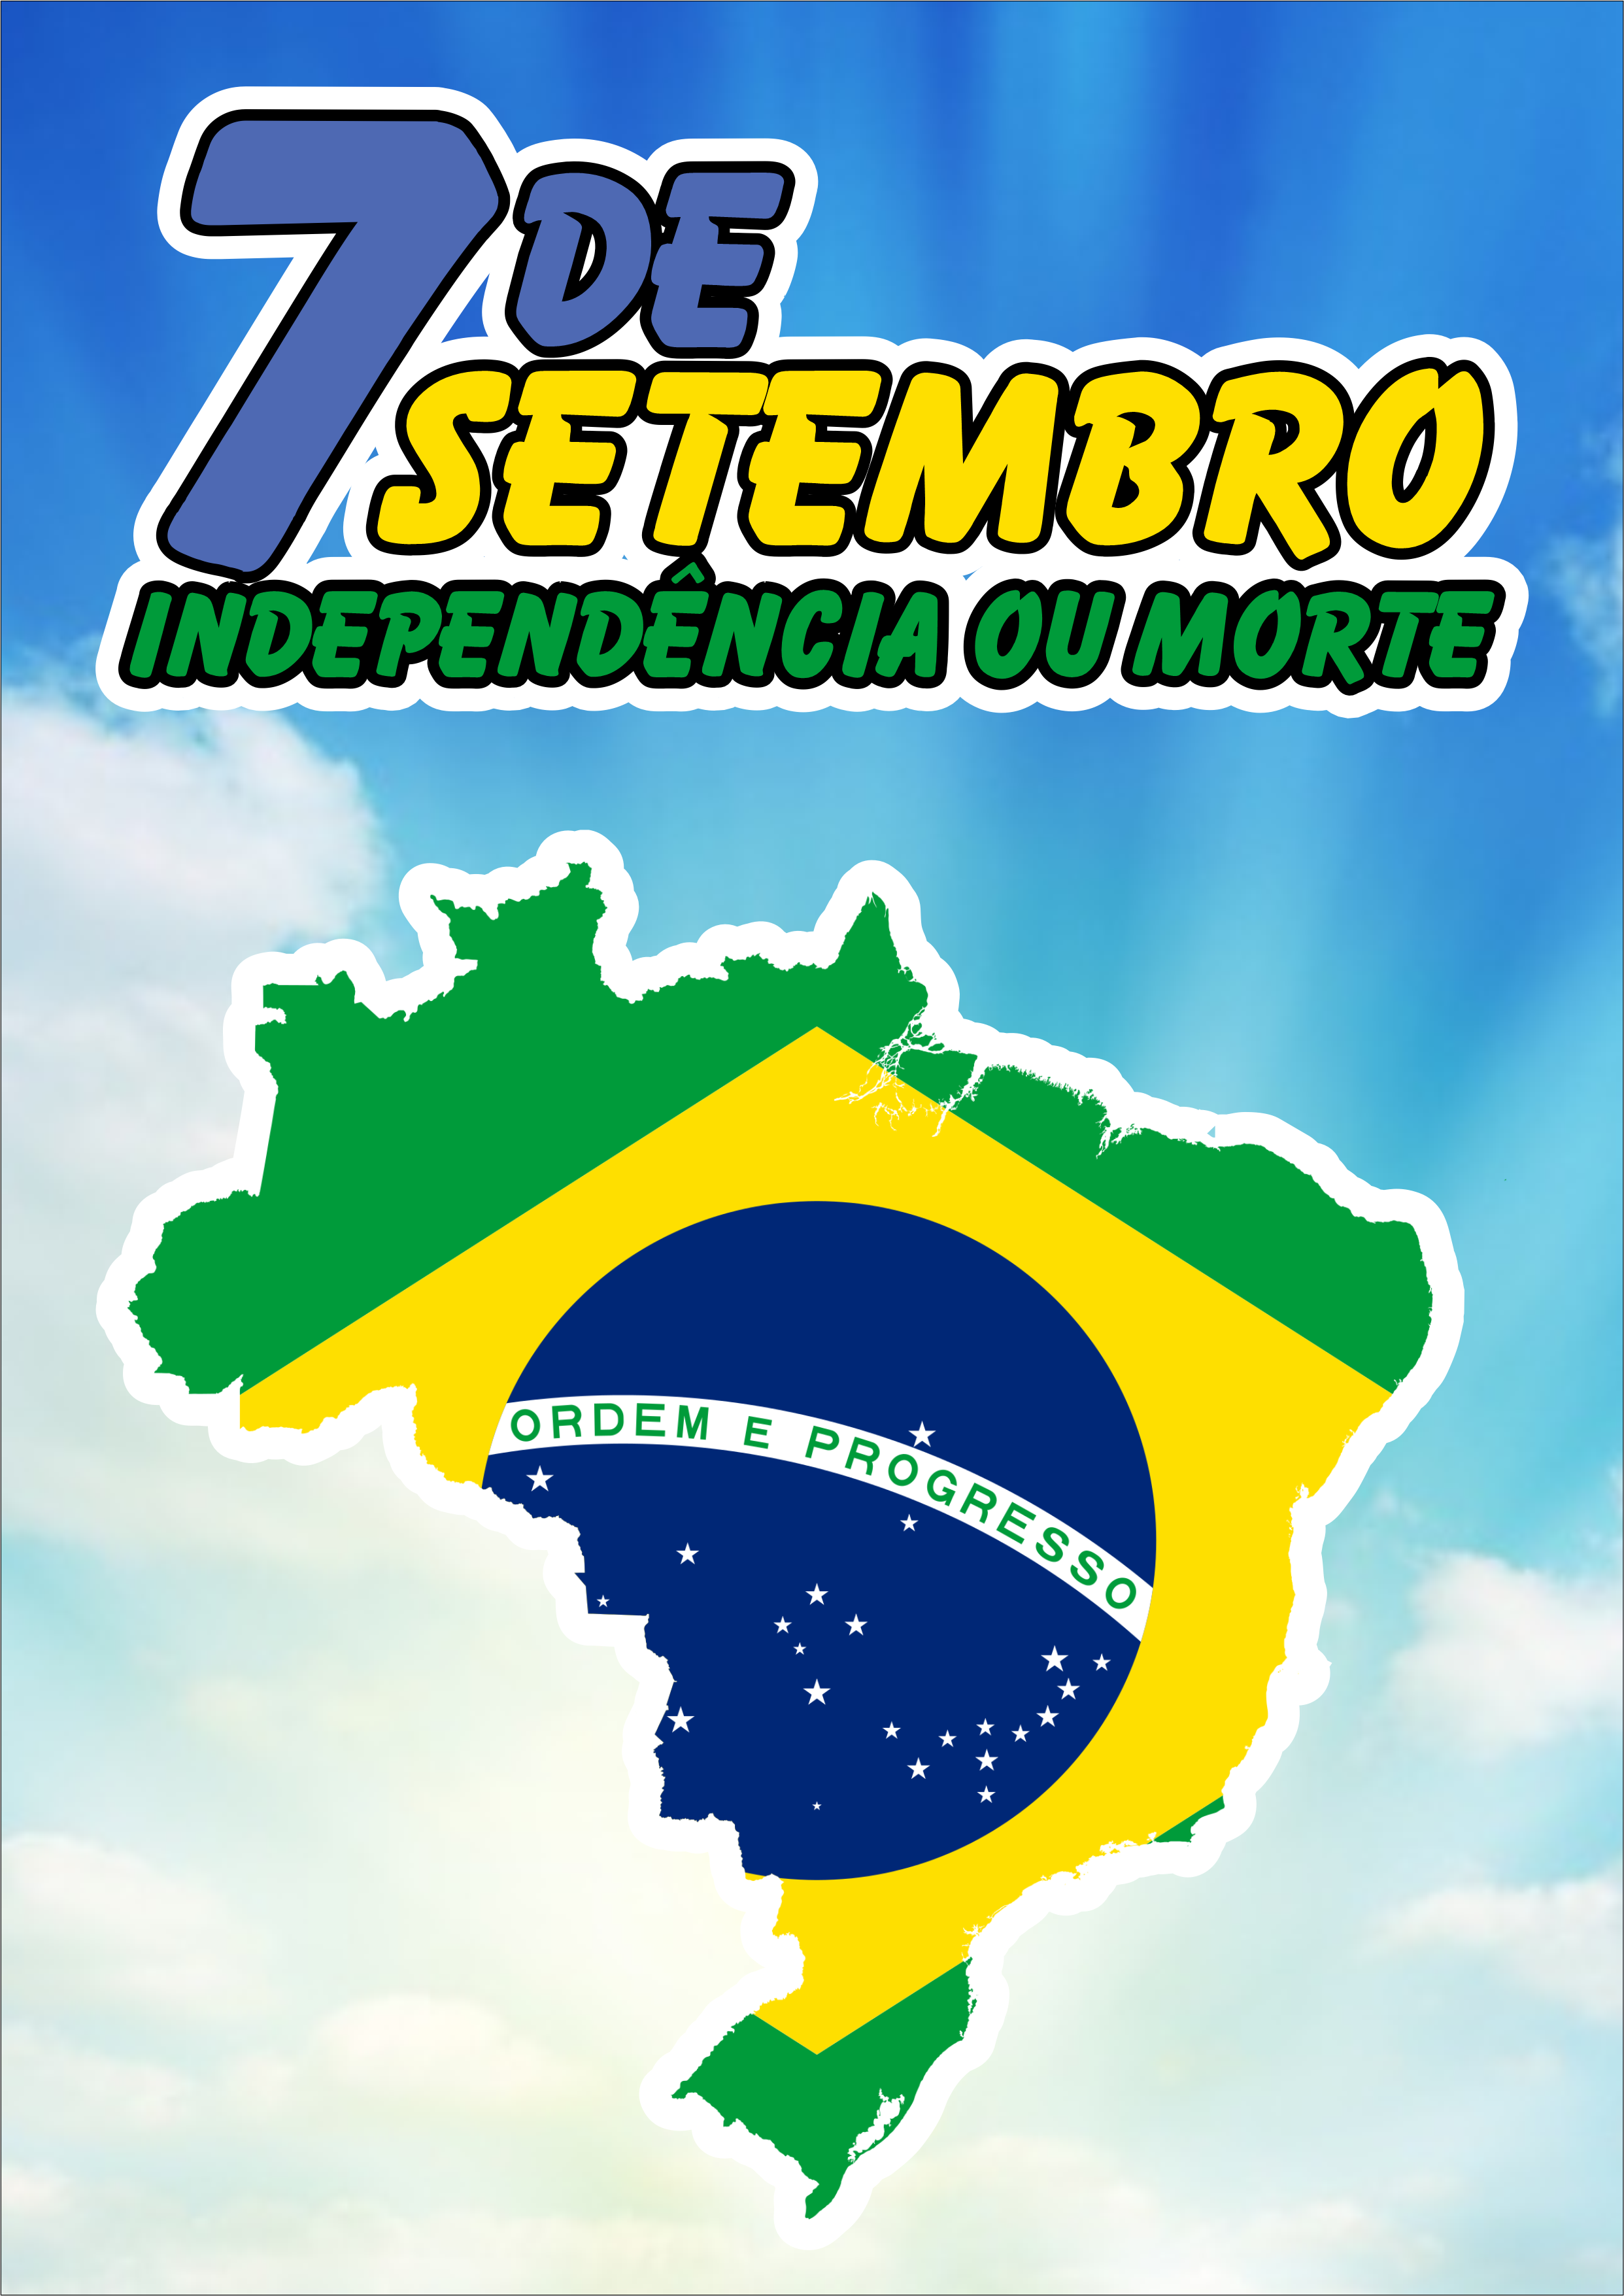 7 de setembro dia da independência do Brasil independência ou morte cartaz mapa png